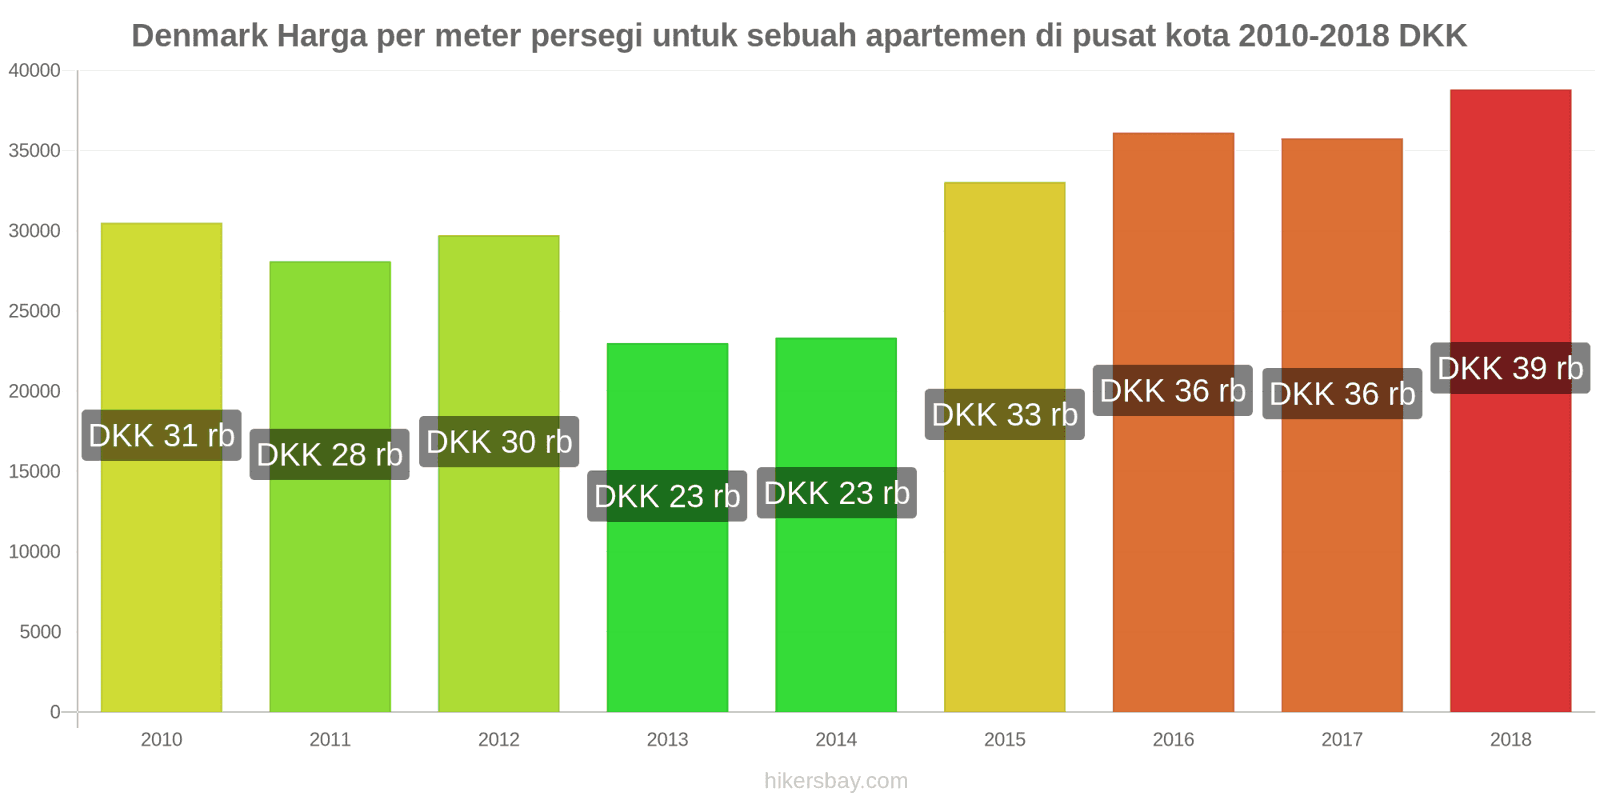 Denmark perubahan harga Harga per meter persegi untuk apartemen di pusat kota hikersbay.com